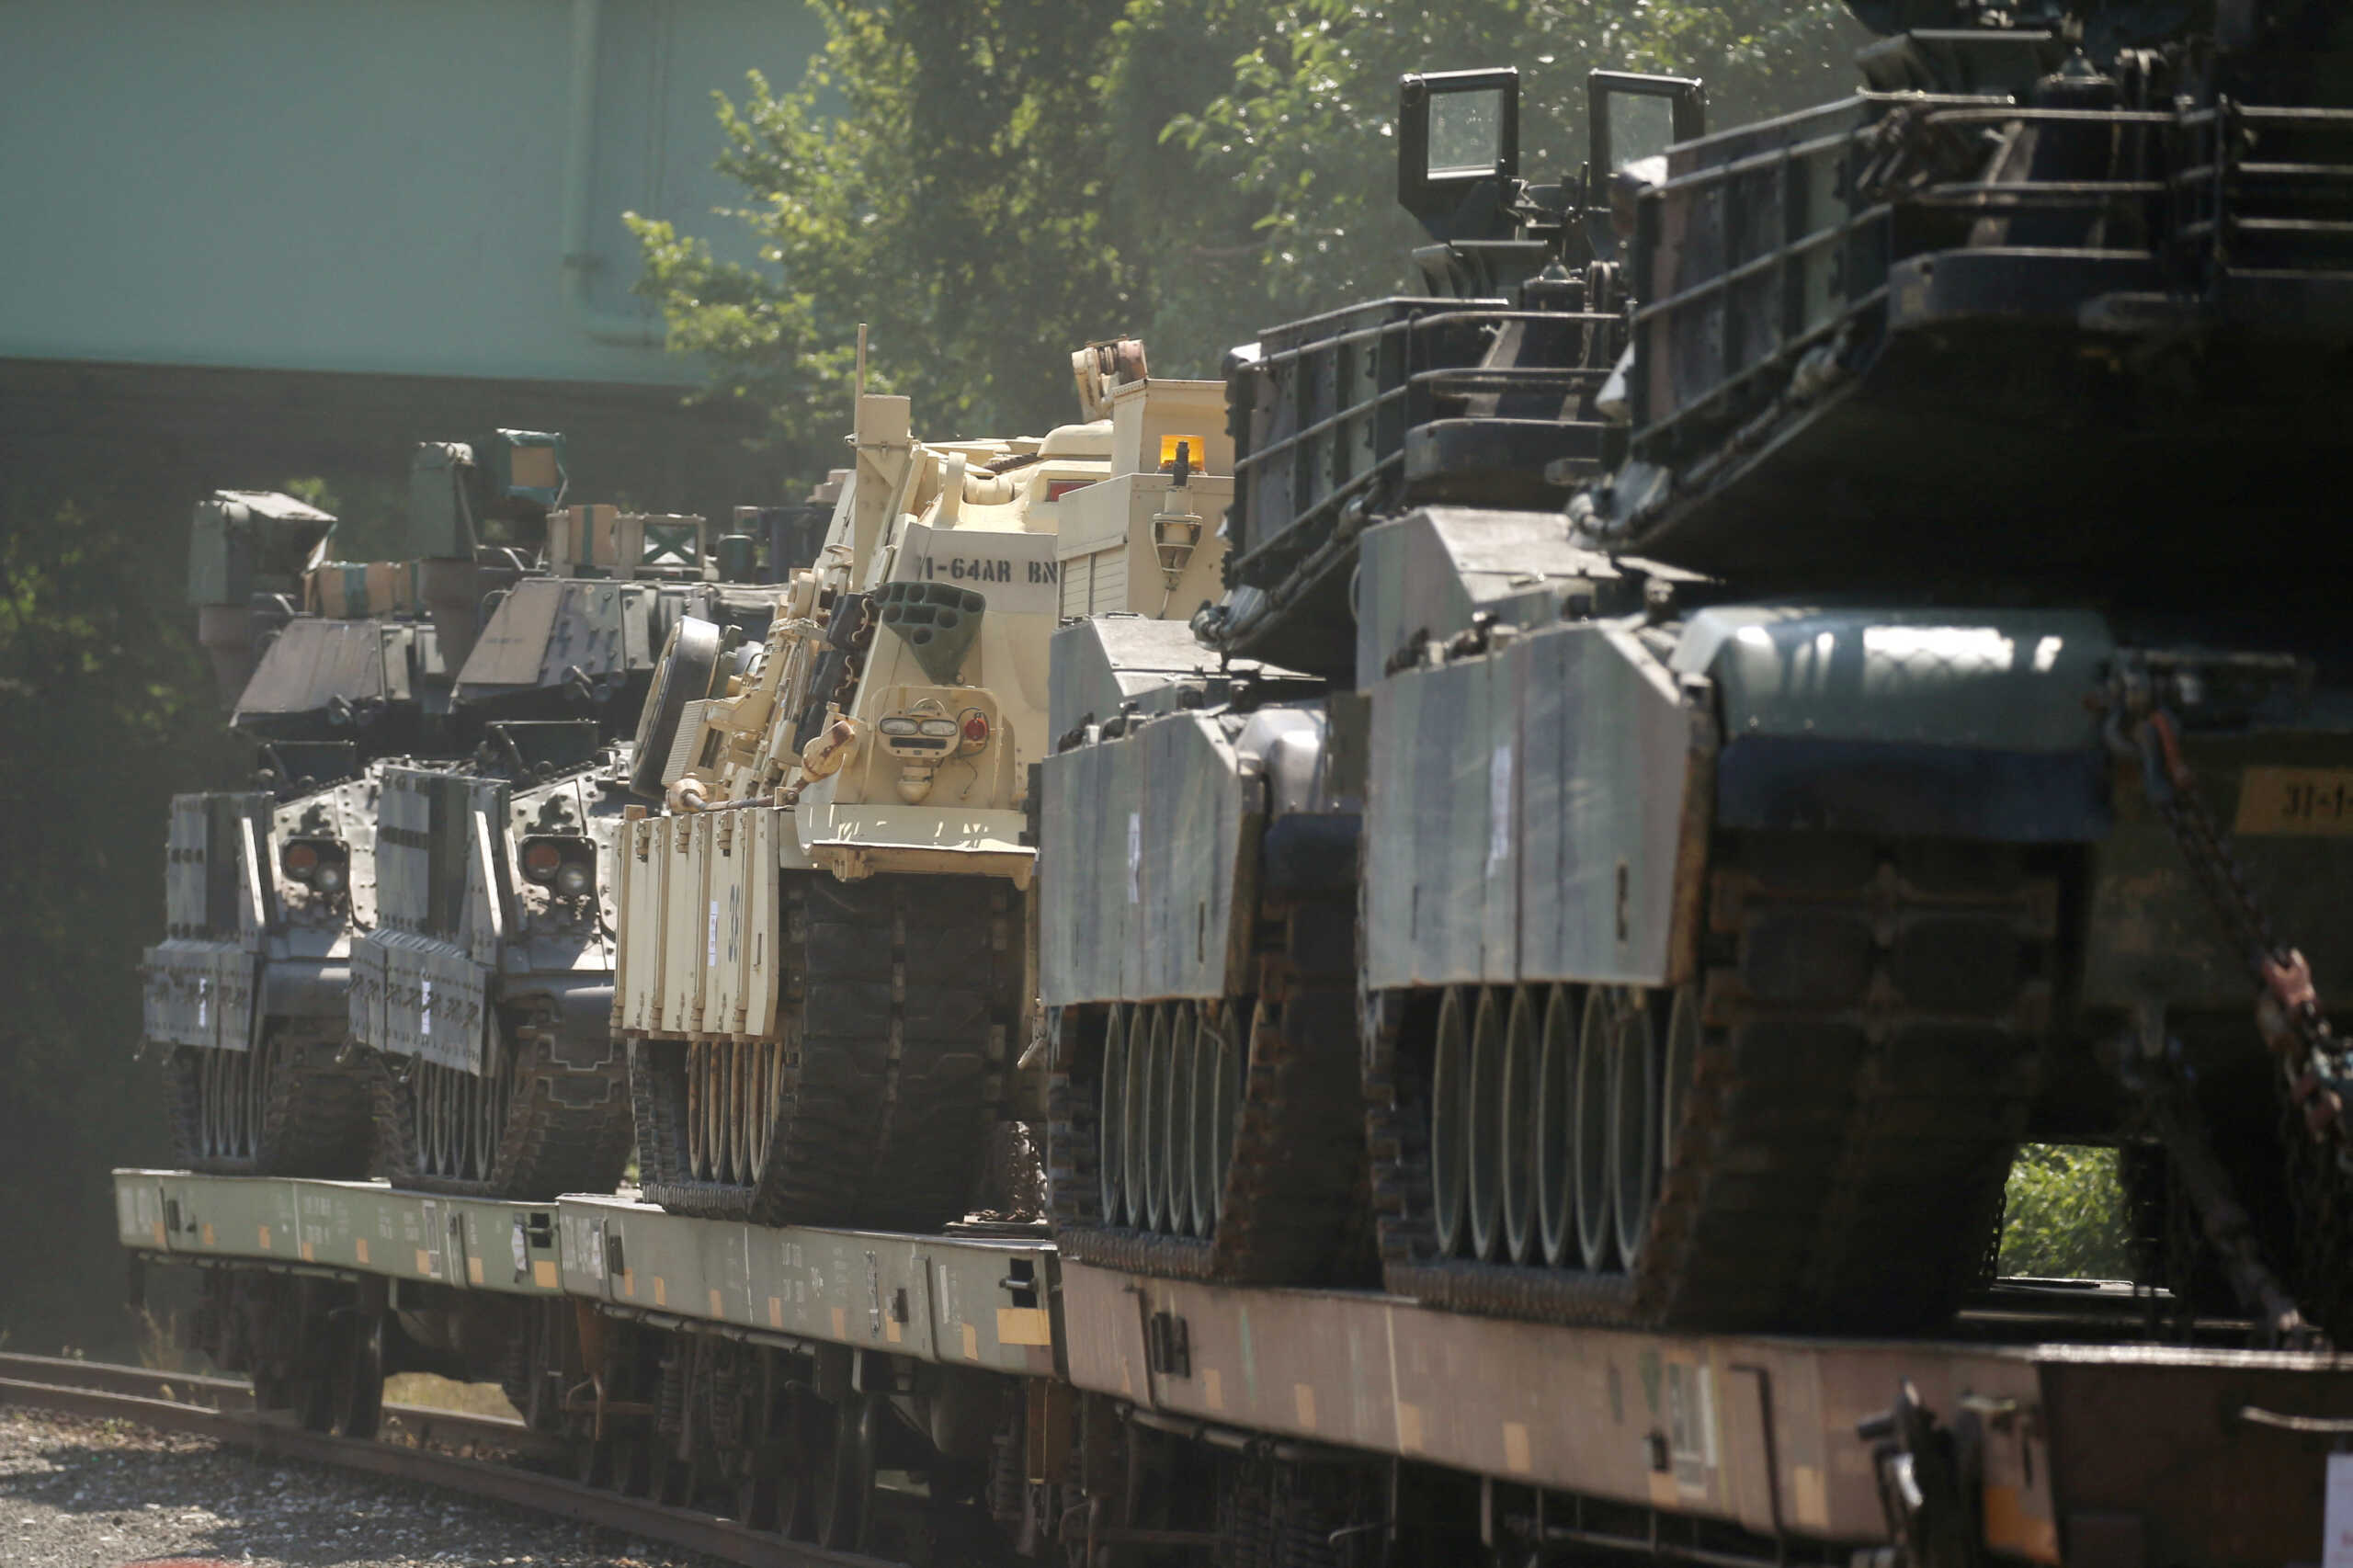 ΗΠΑ: Στέλνουν στην Ουκρανία 31 άρματα Abrams αξίας 400 εκατ. δολαρίων, είπε δημοσιογράφος του Bloomberg